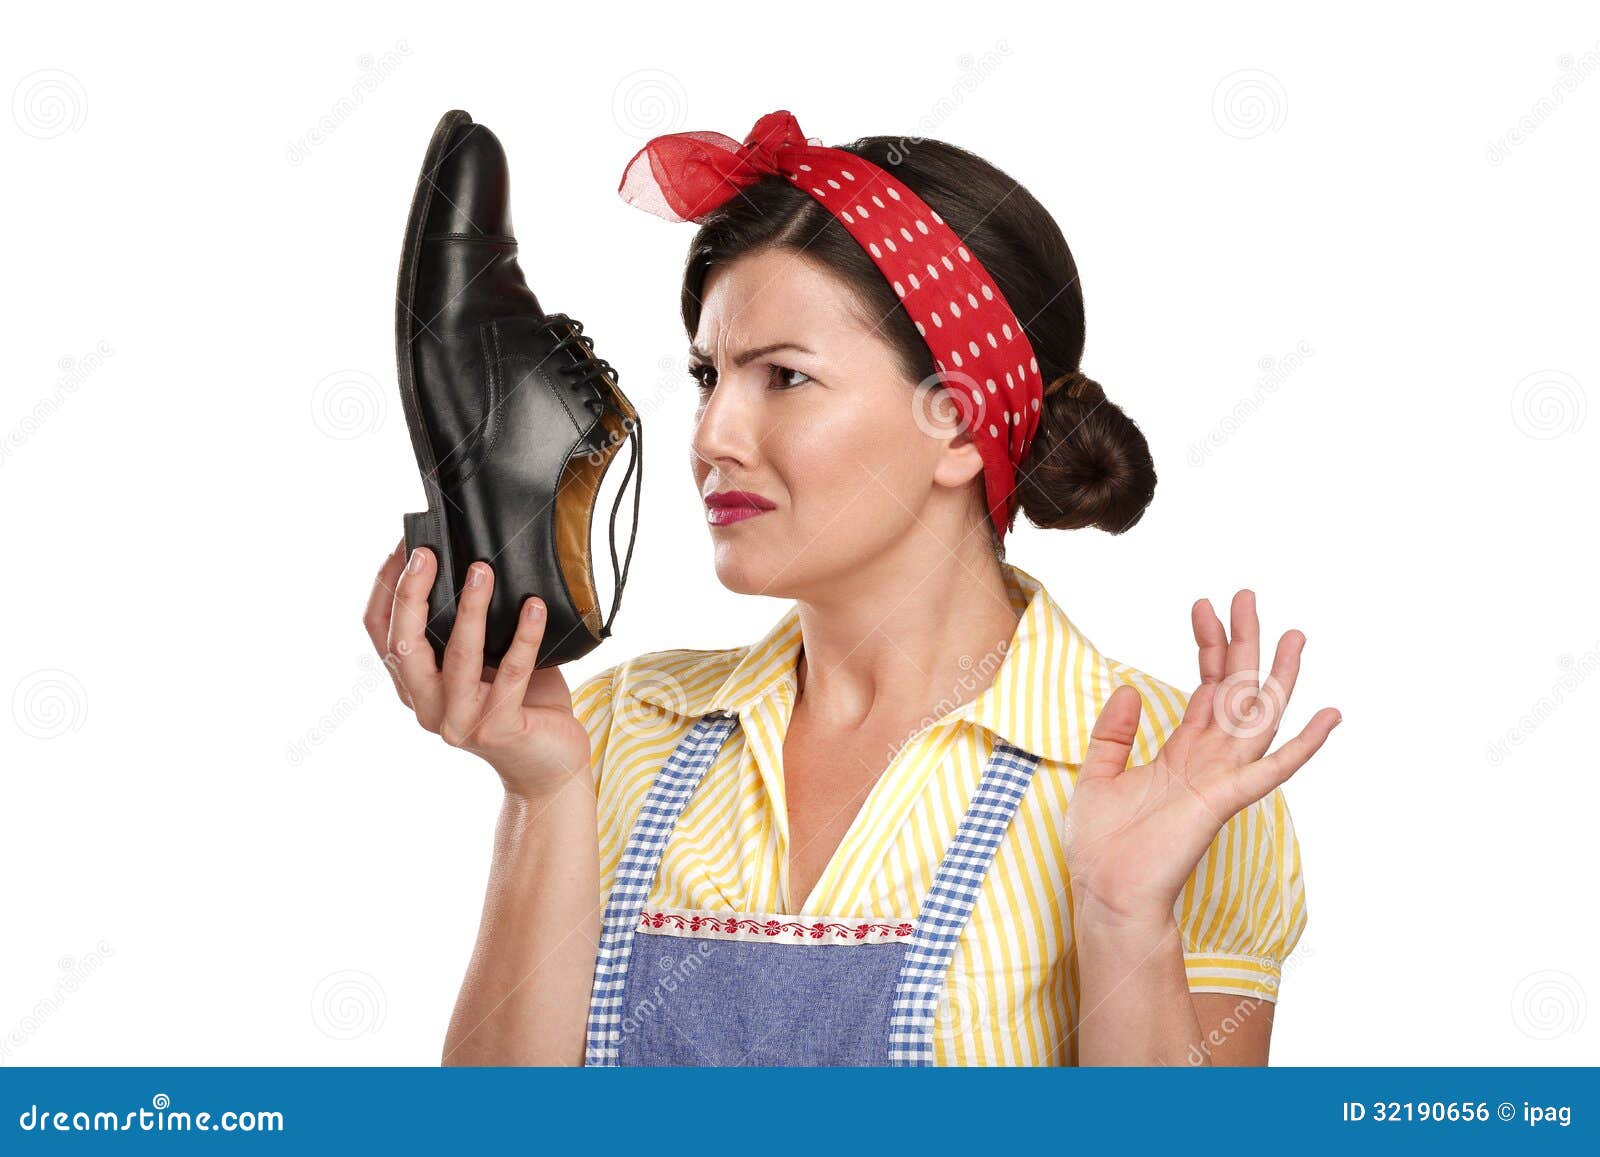 Г воняет. Приятный запах от обуви. Запах с обуви фото. Женщина держит вонючую обувь. Вонючие женские туфли.